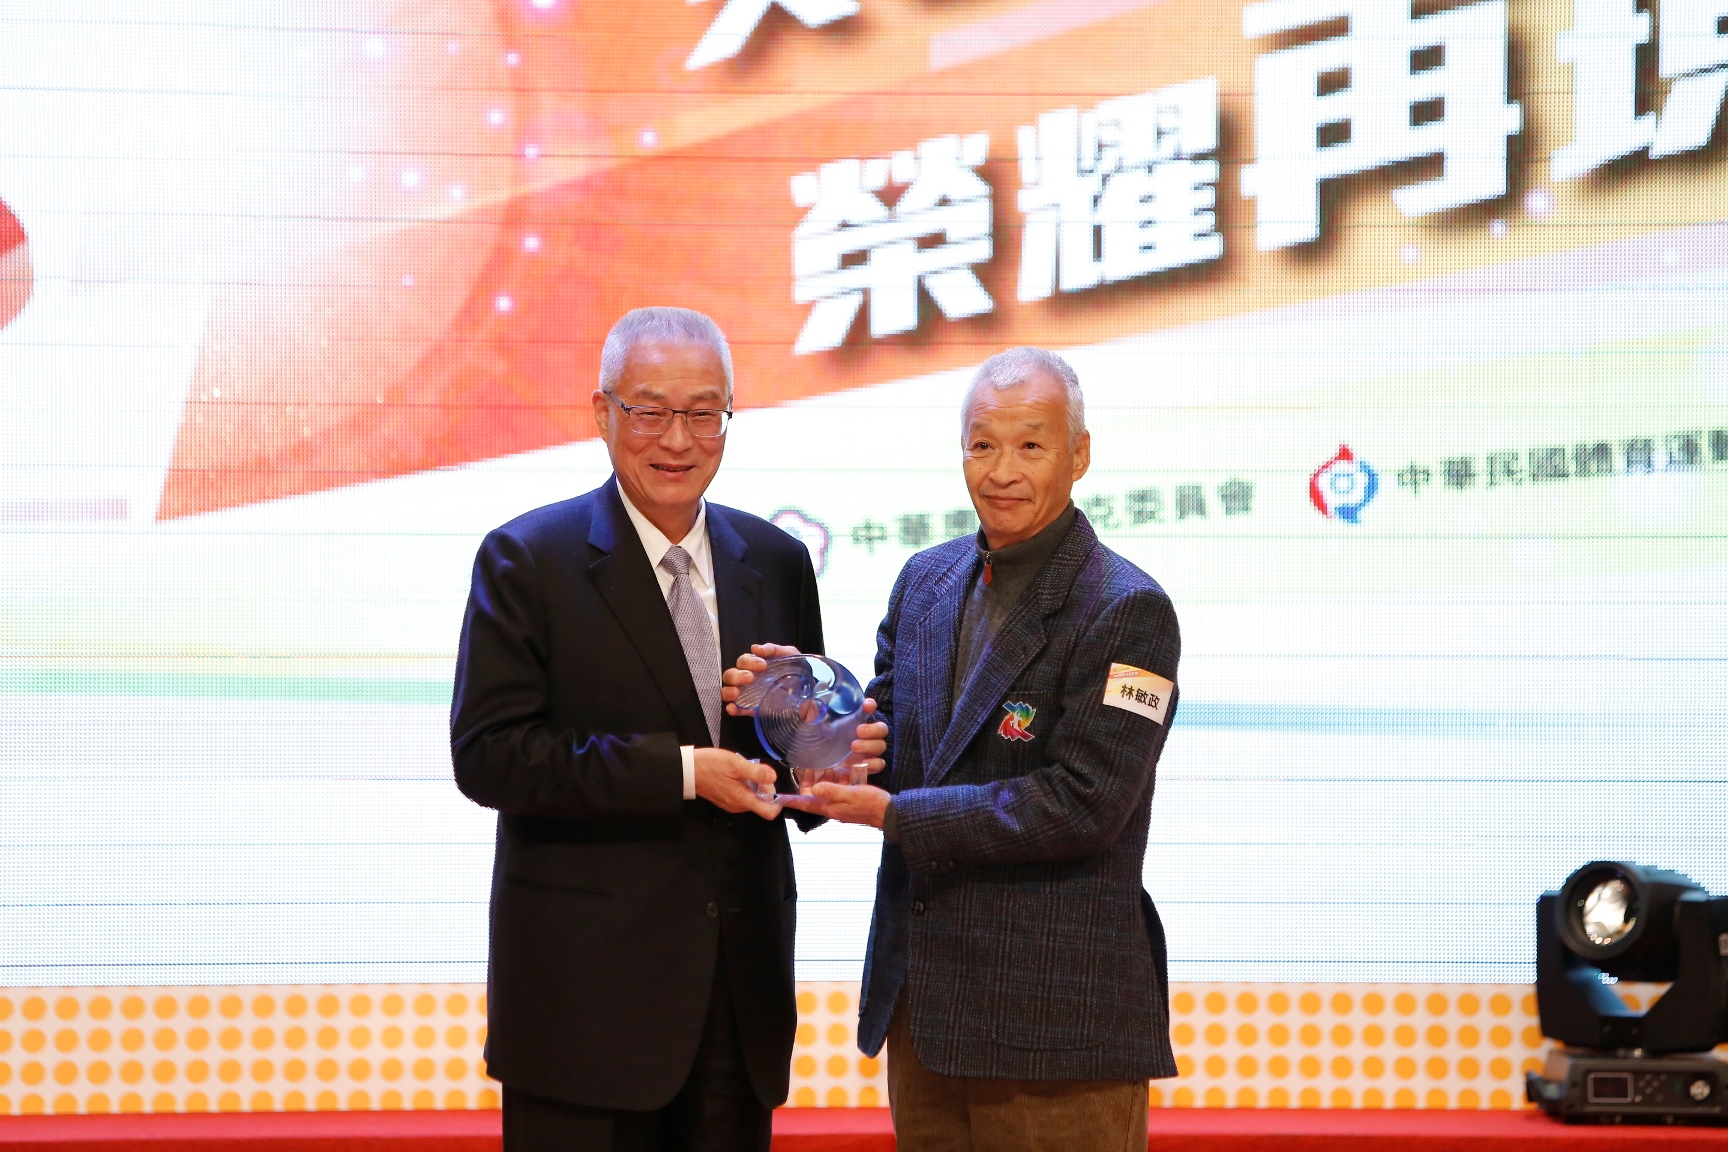 2015 Taiwan Sports Elite Awards Ceremony